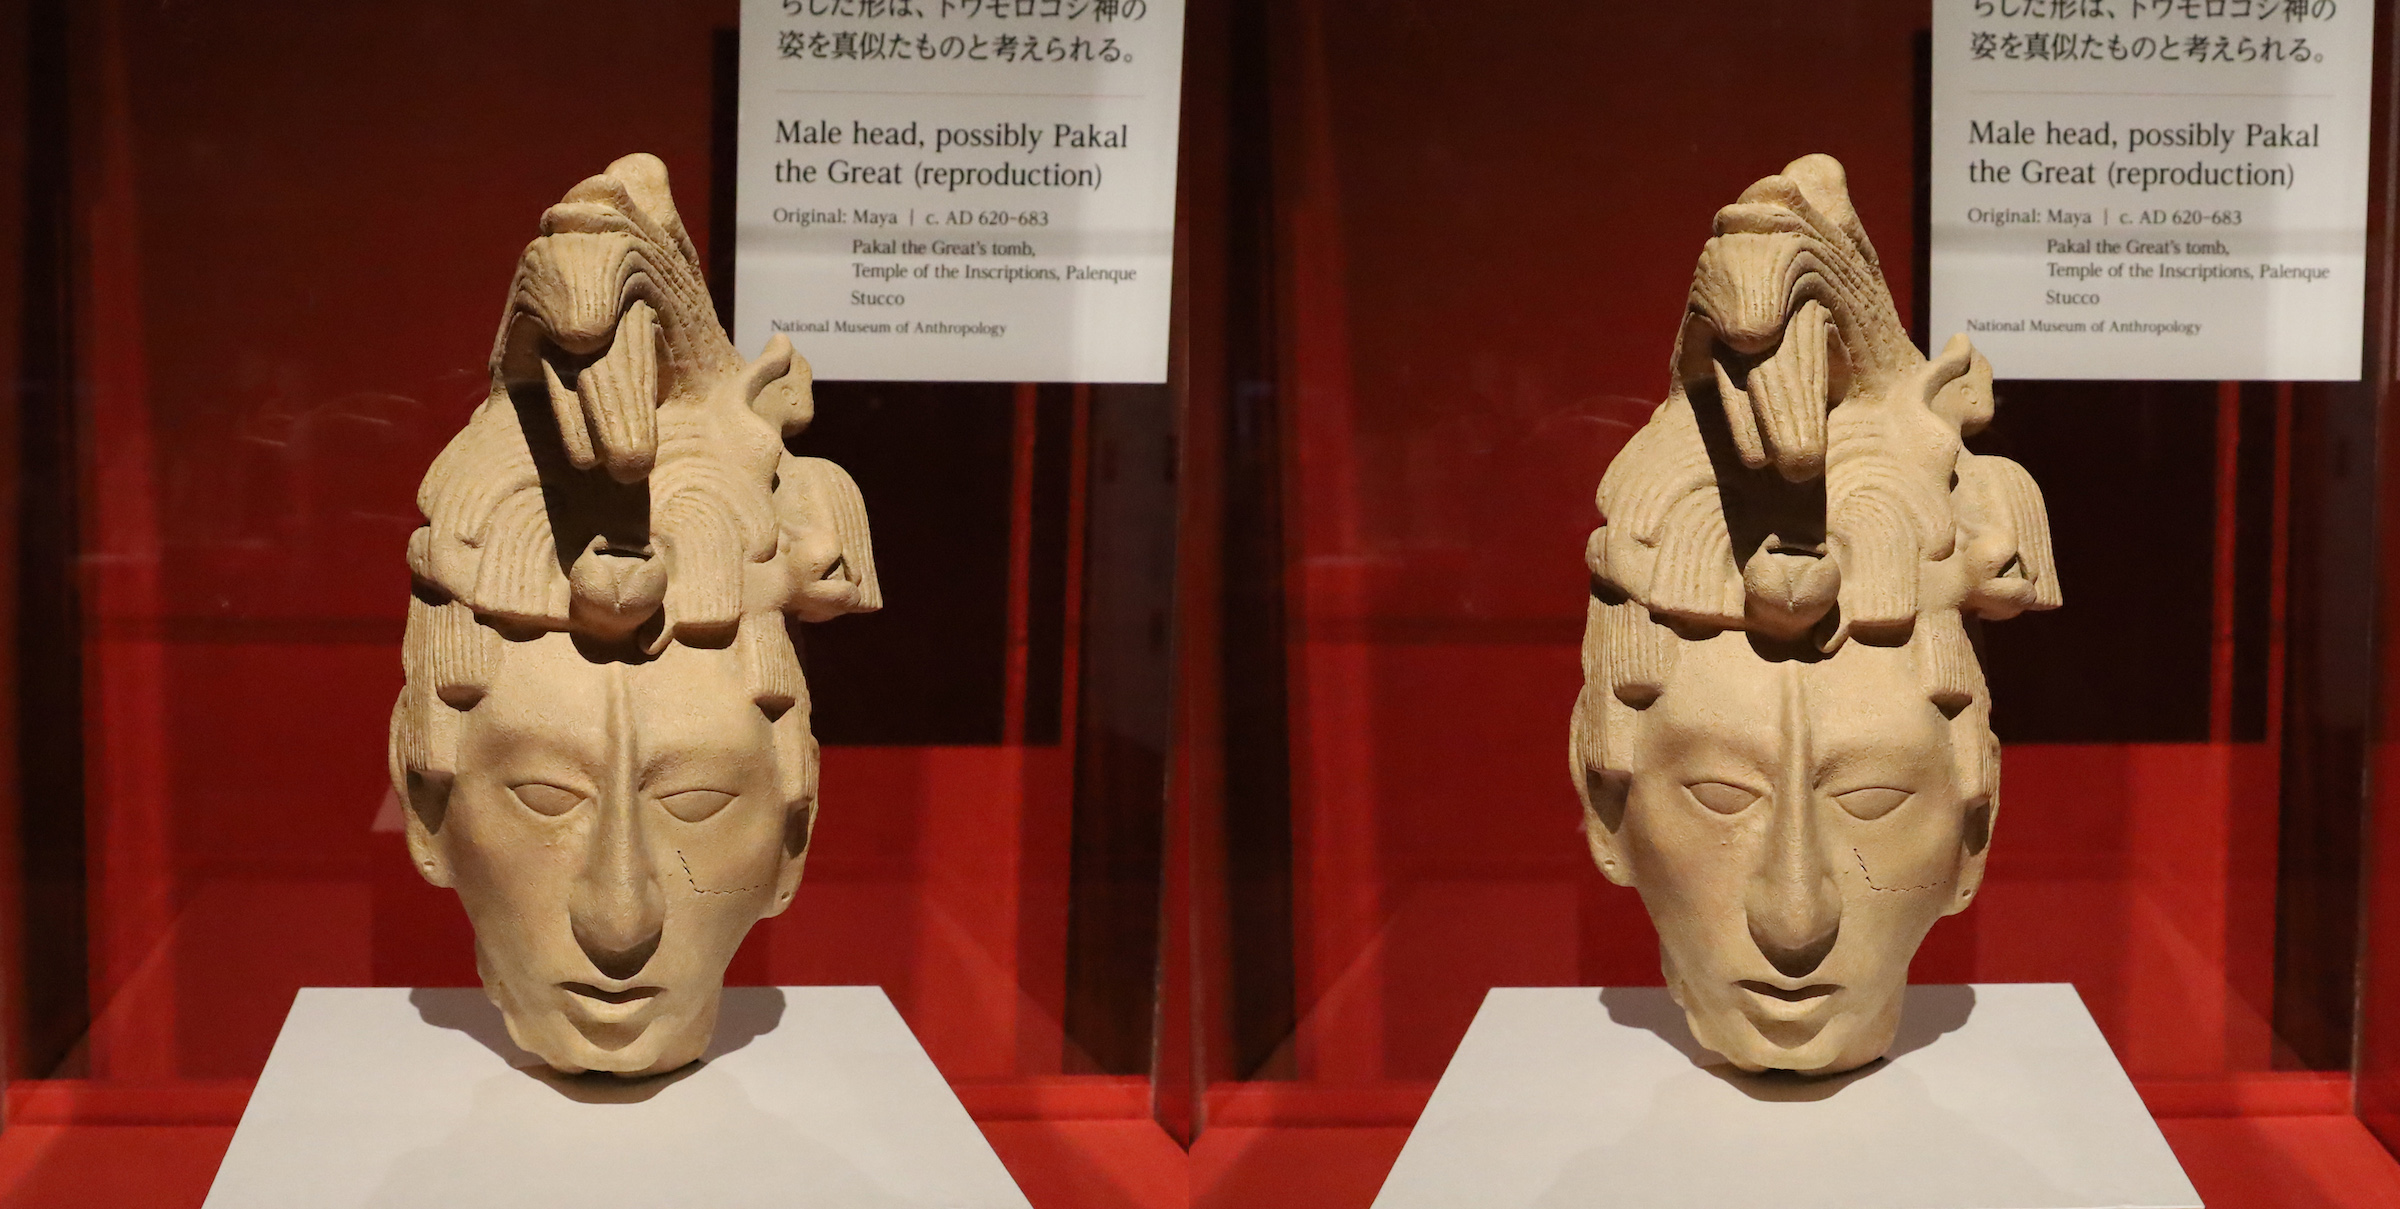 パカル王とみられる男性頭像（複製）（マヤ文明、620〜683年頃）